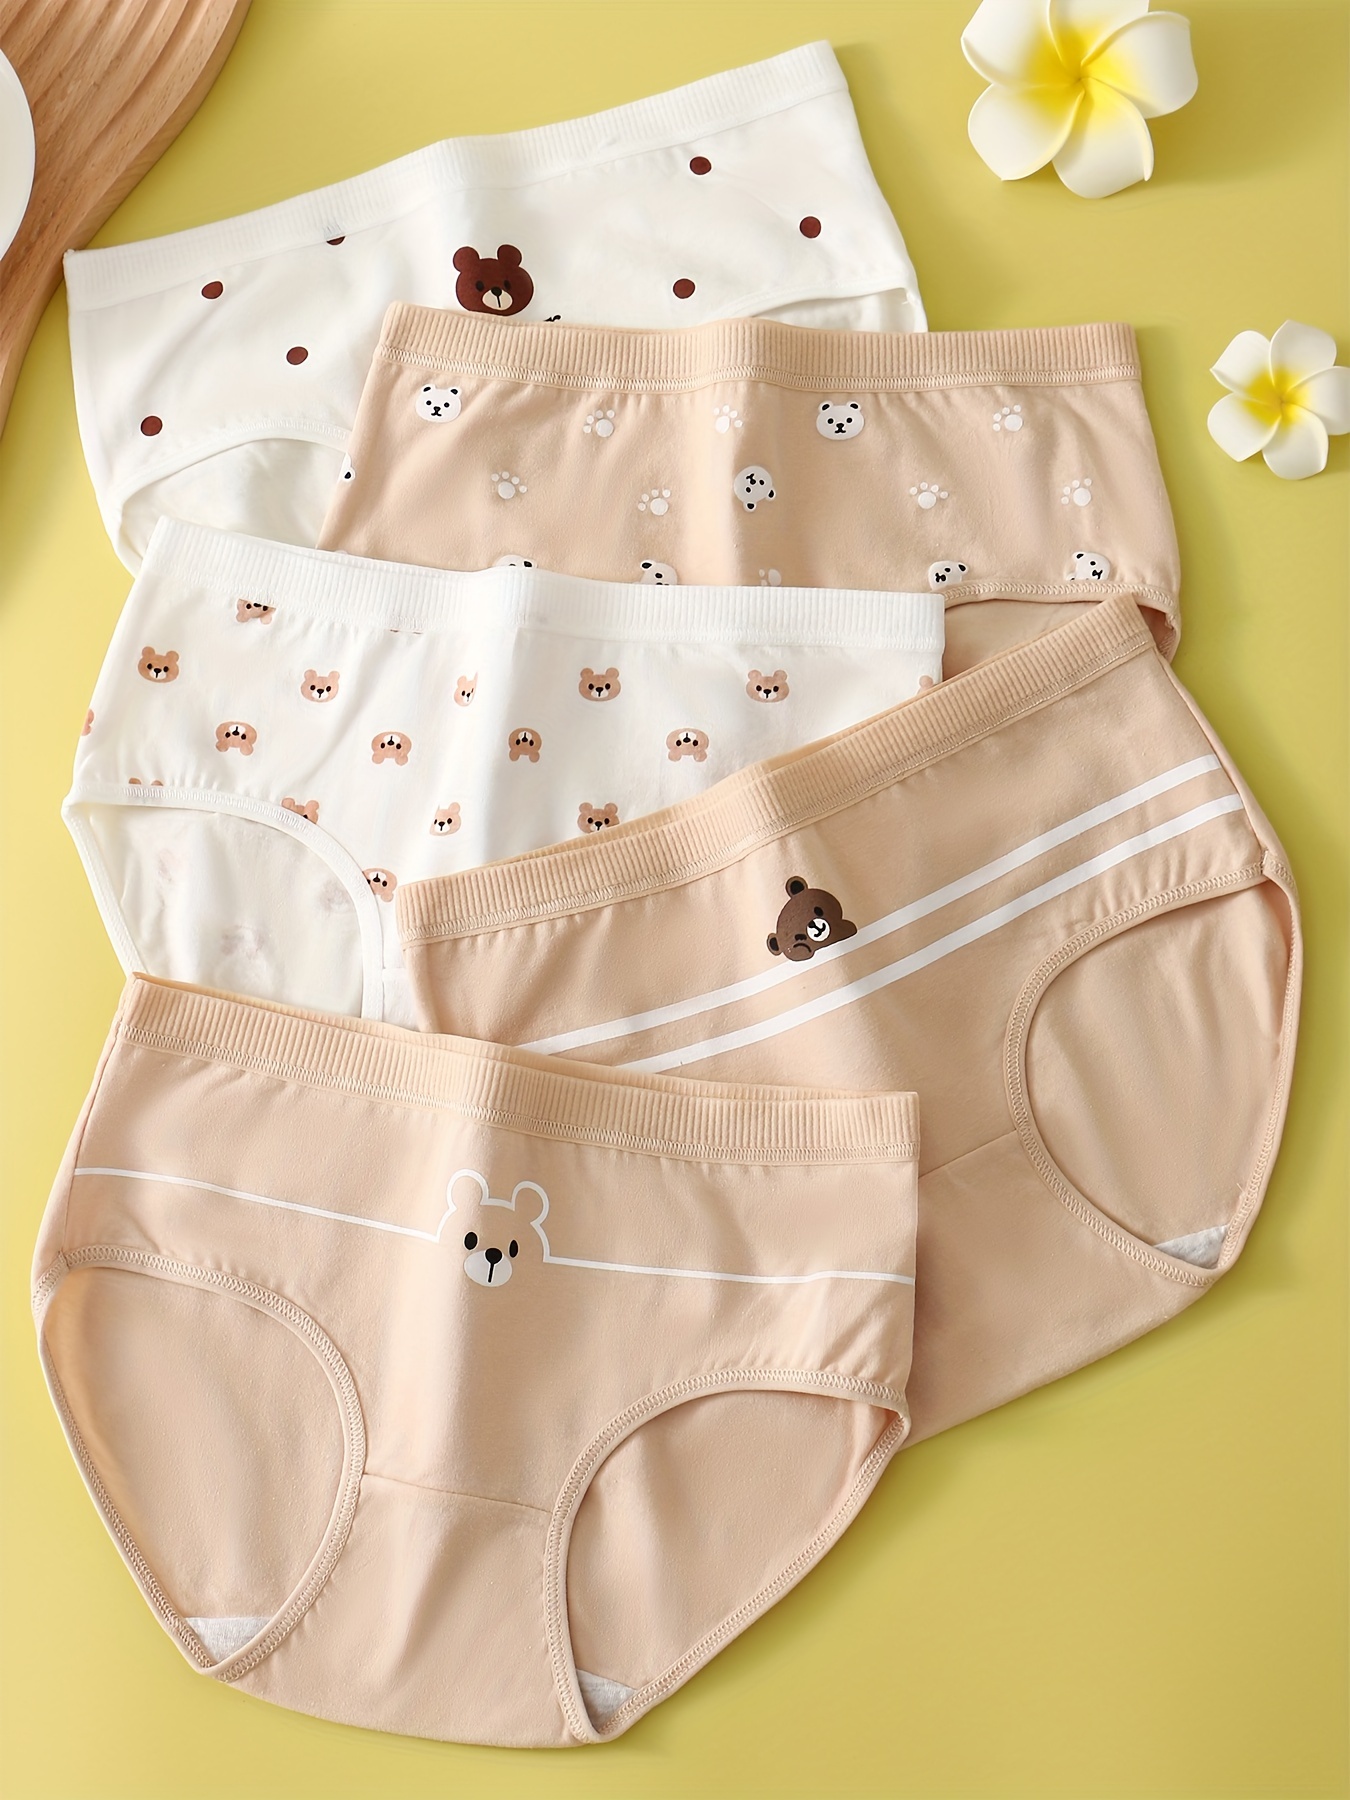 3Pcs/Lot Girls Cotton Underwear floral/plaid Soft Breathable